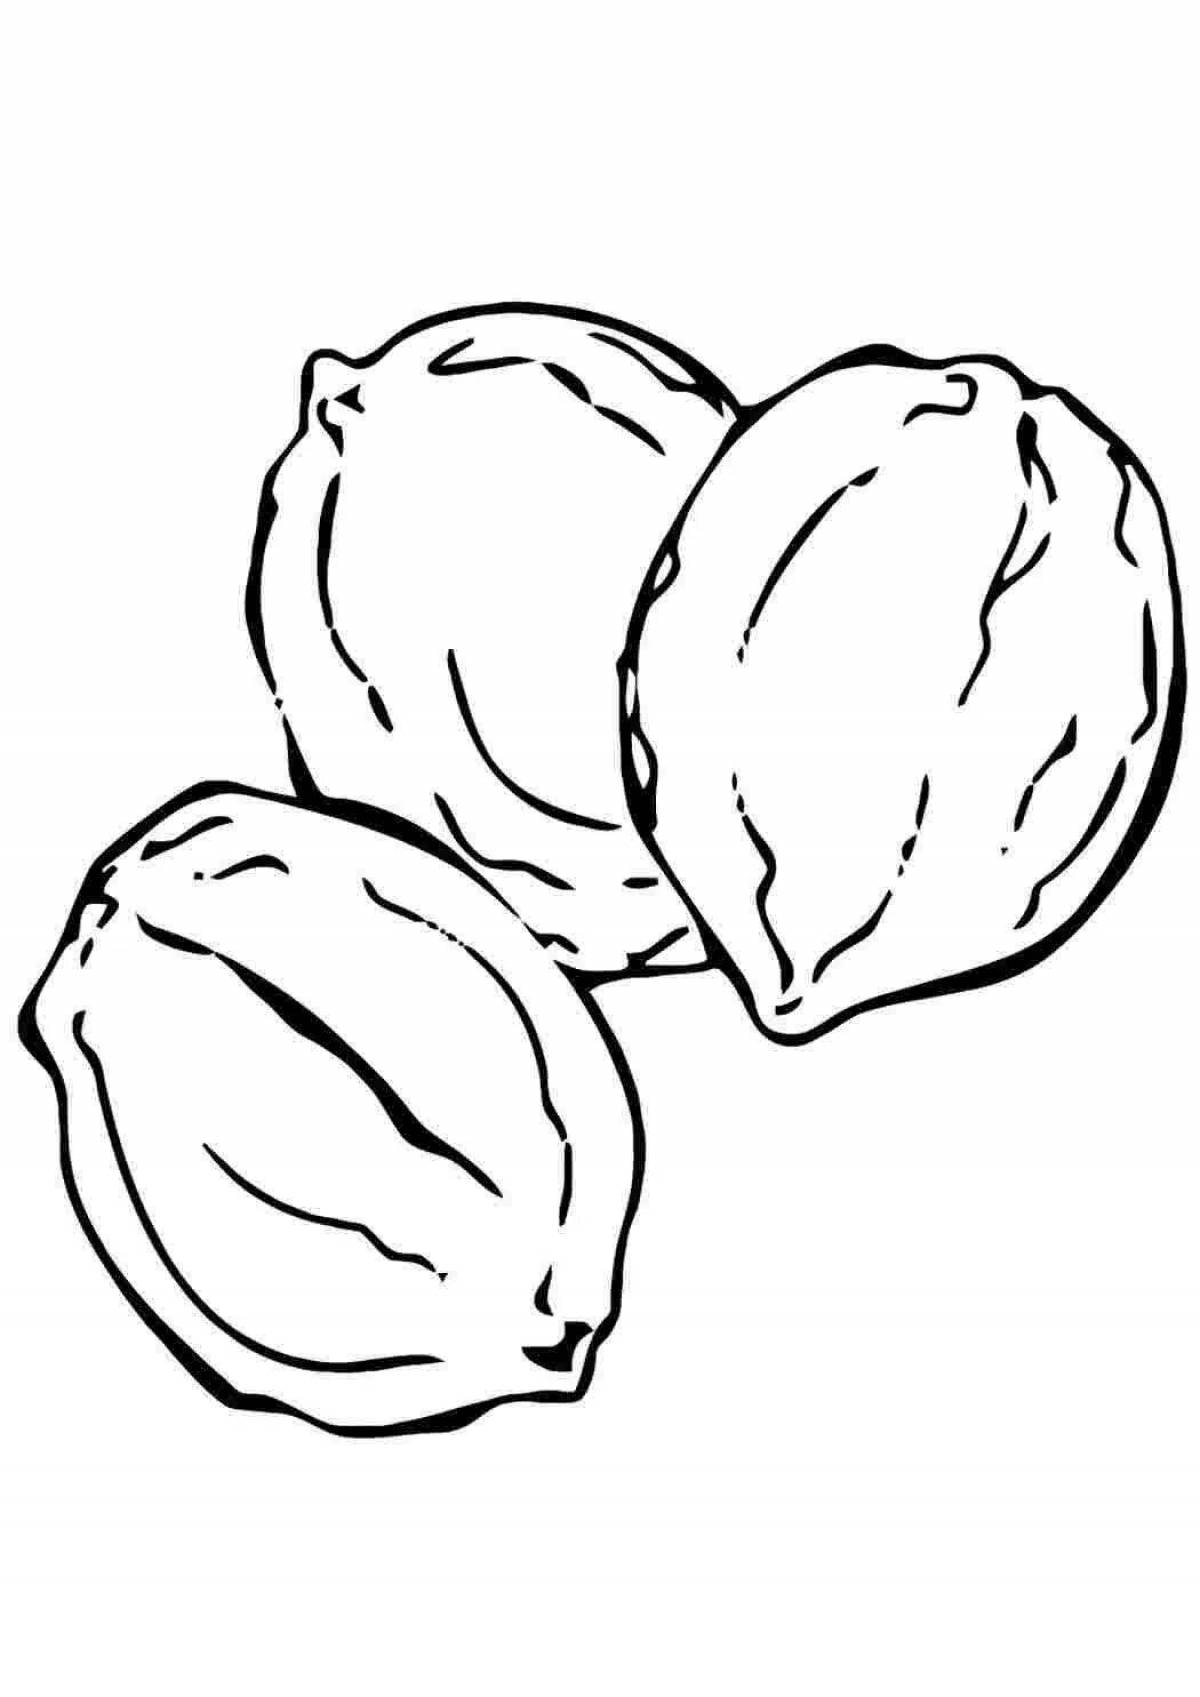 Картинки орехи, карточки Домана «Вундеркинд с пеленок» — орехи скачать бесплатно